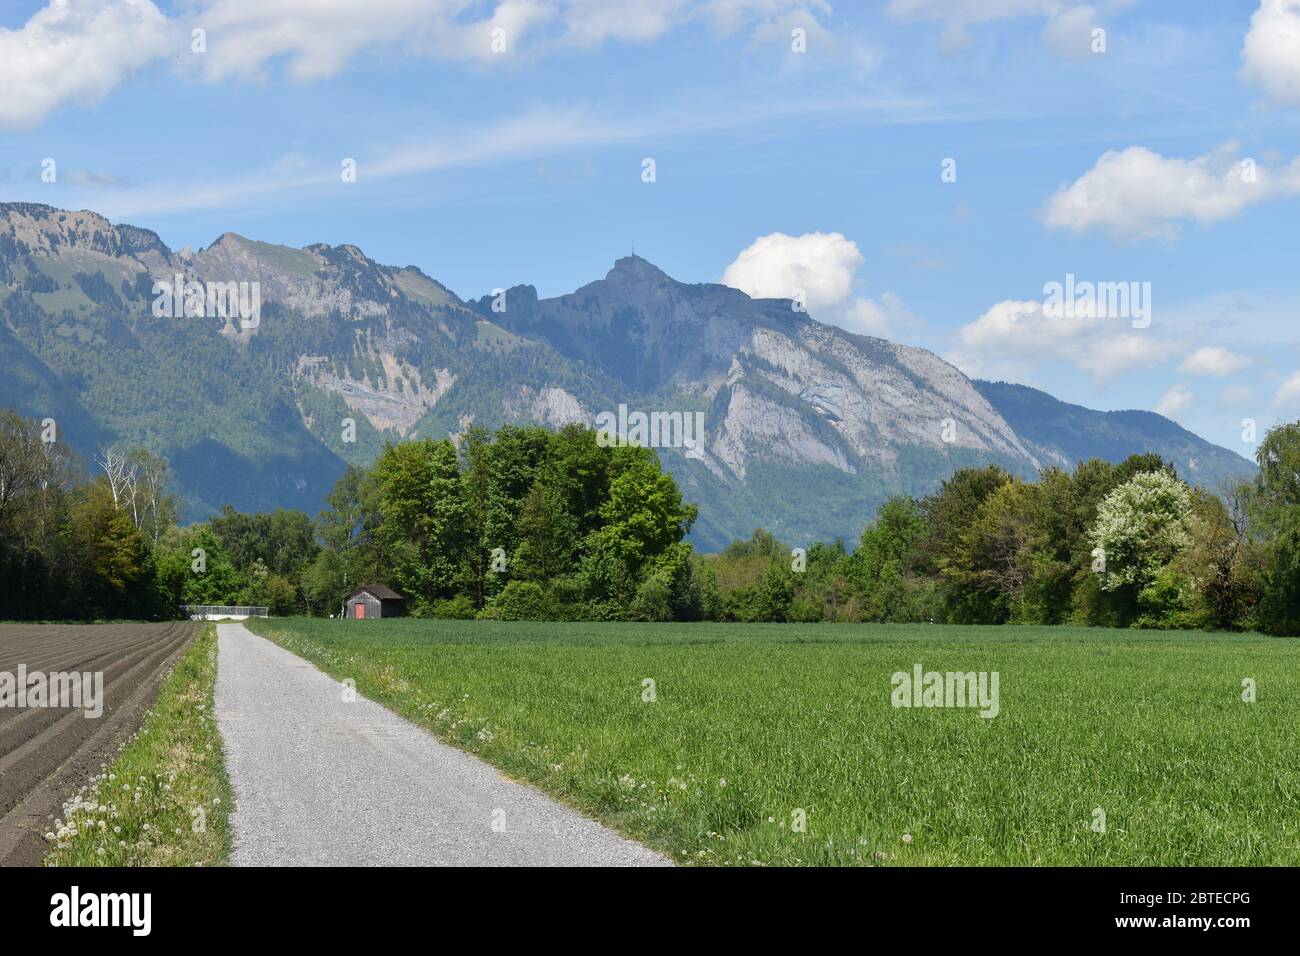 Landscape view in Liechtenstein Stock Photo